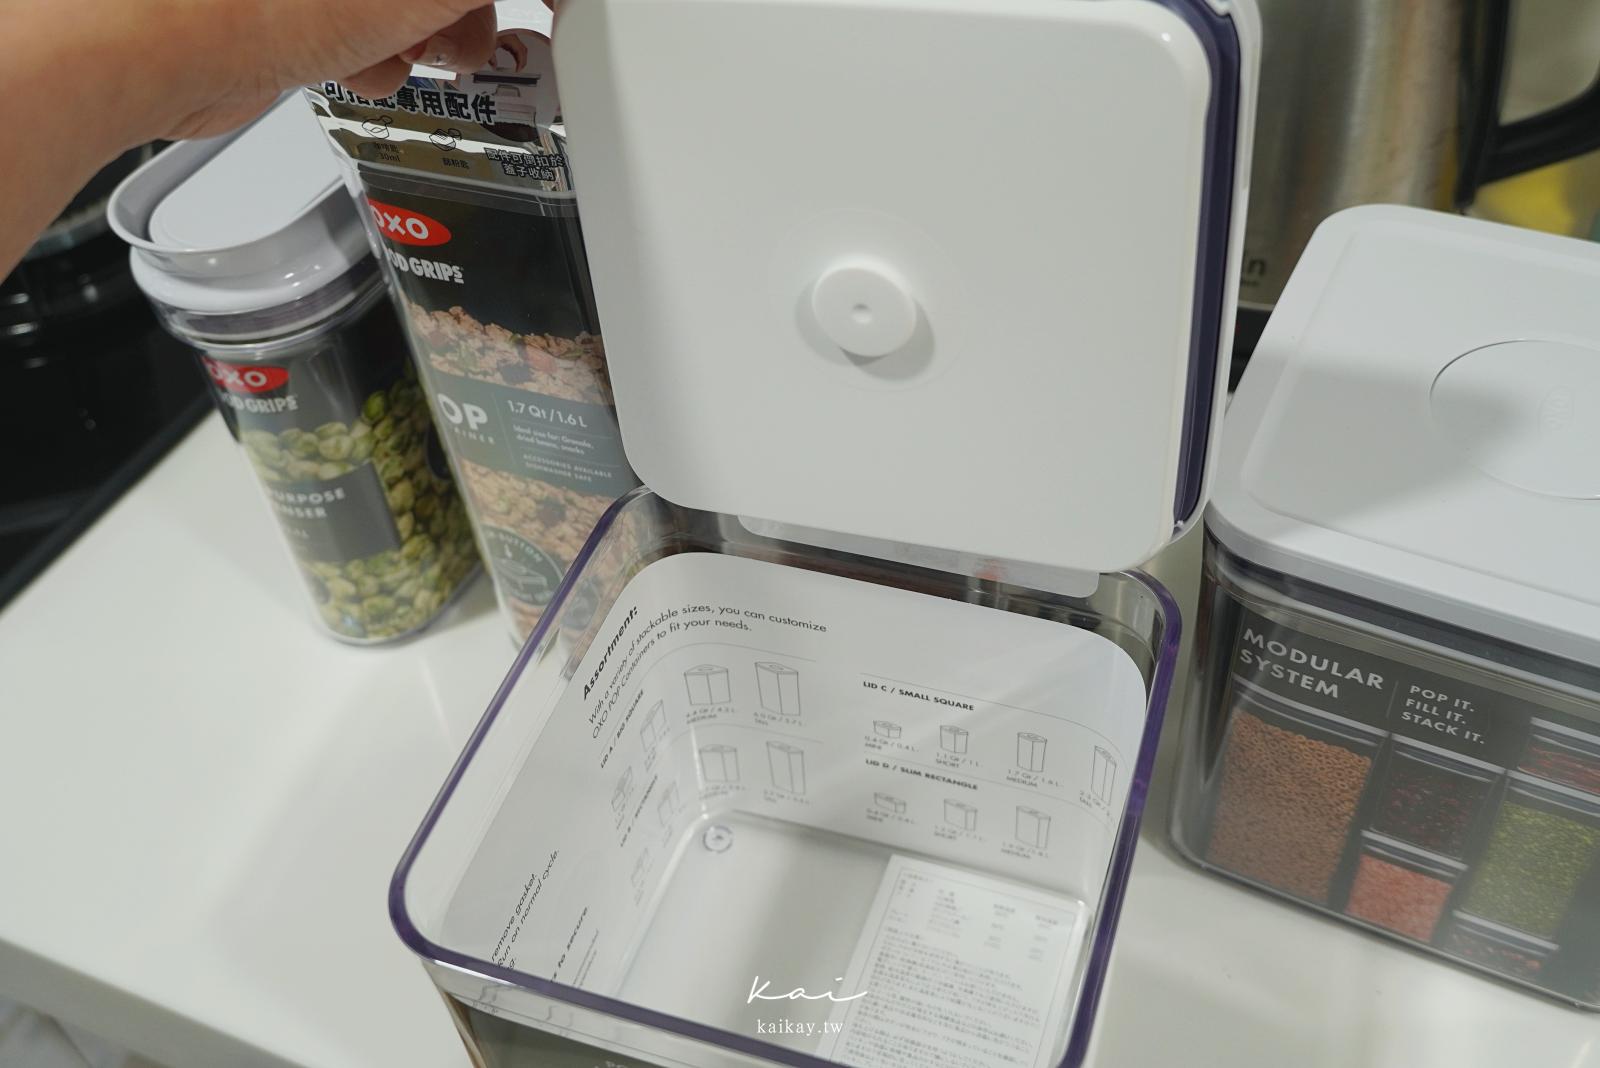 ☆【生活】OXO按壓保鮮盒、Stasher矽膠密封袋。收納小廢柴的貼心神助攻